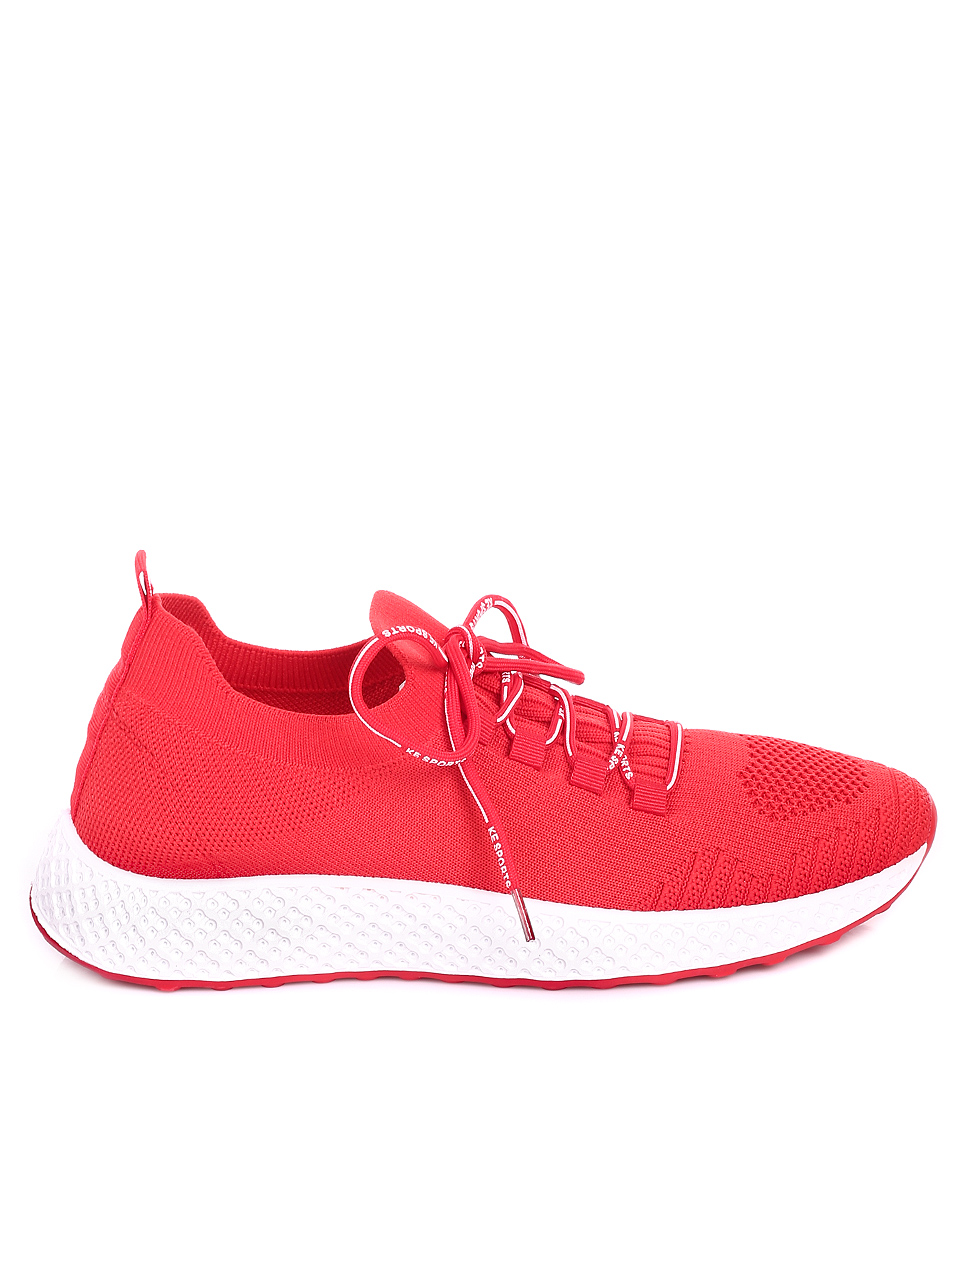 Ежедневни мъжки обувки в червено 7U-20110 red